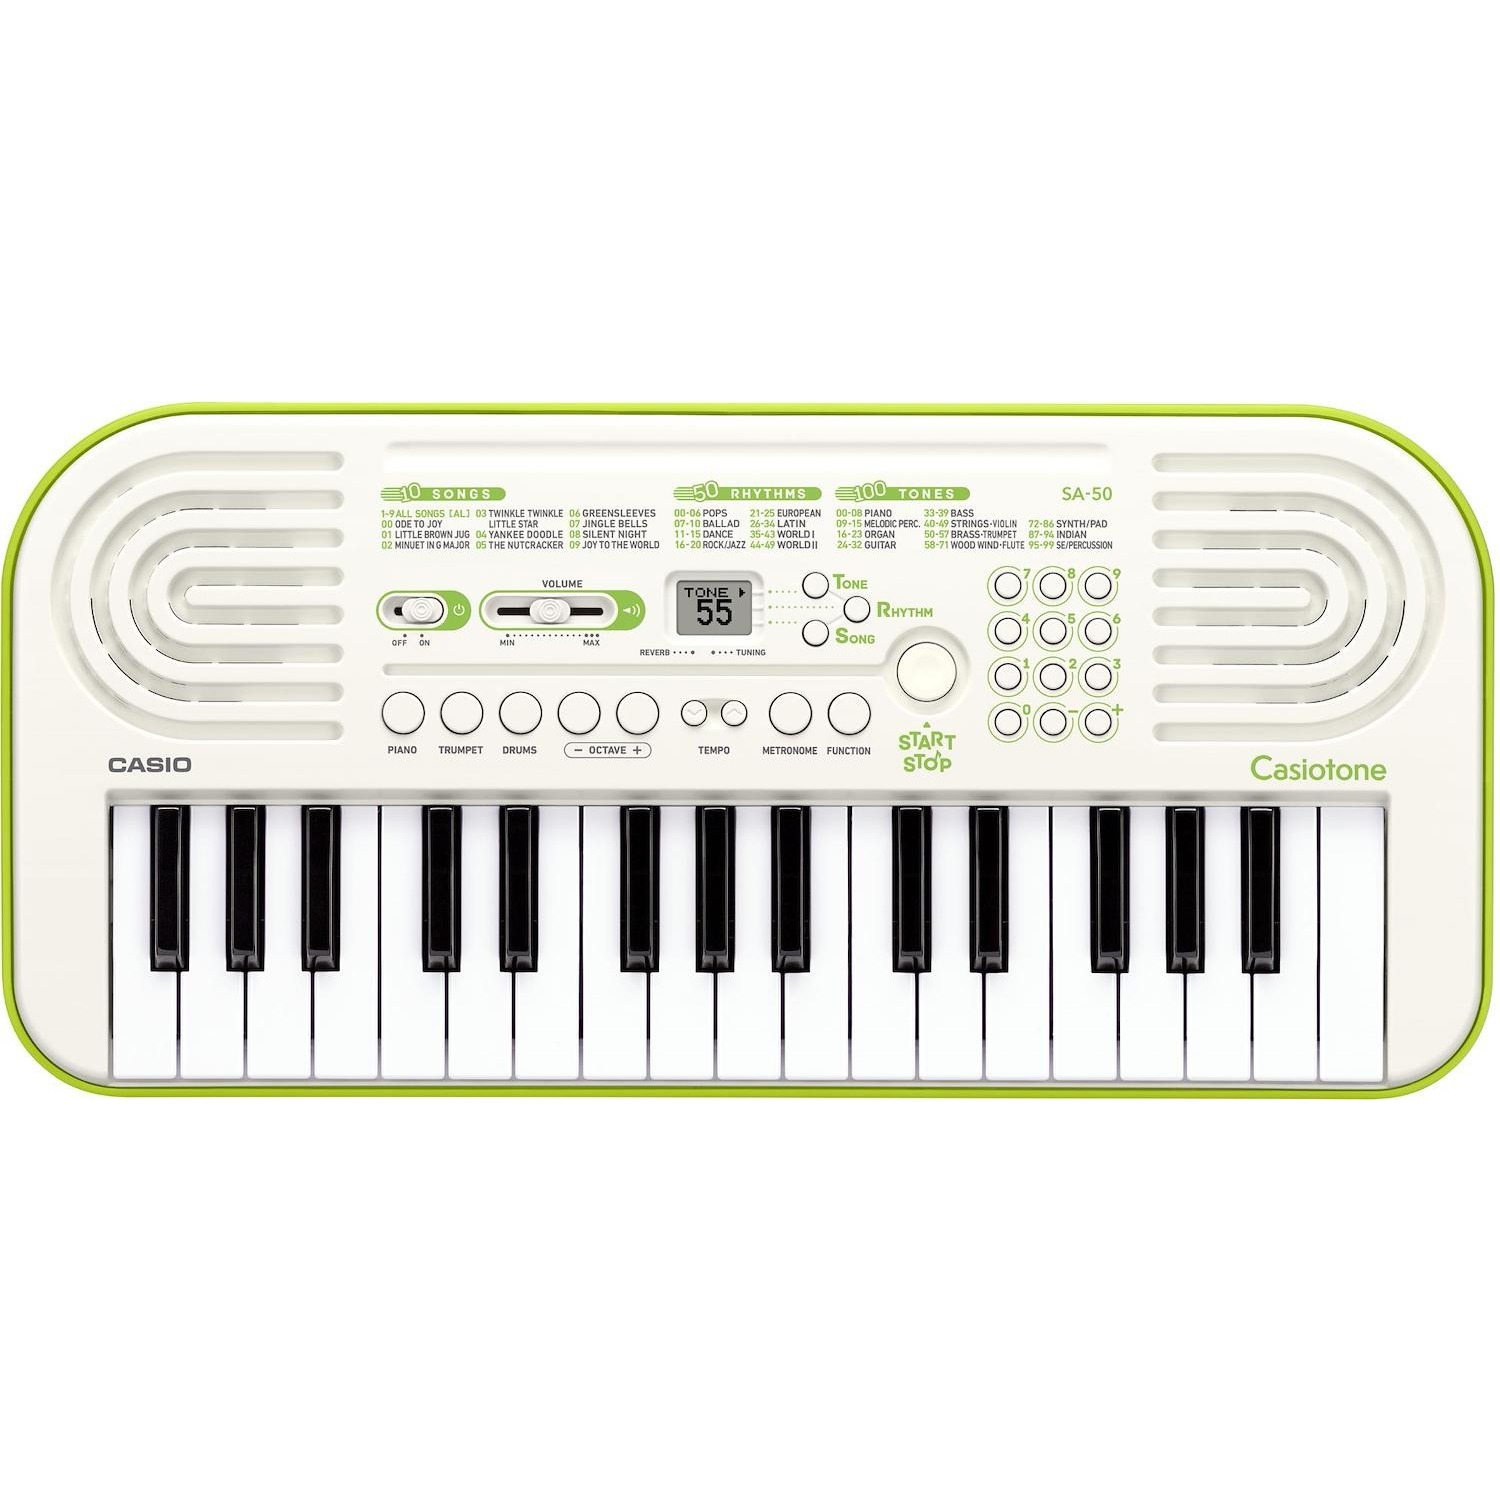 Immagine per Tastiera musicale digitale Casio SA 50 da DIMOStore